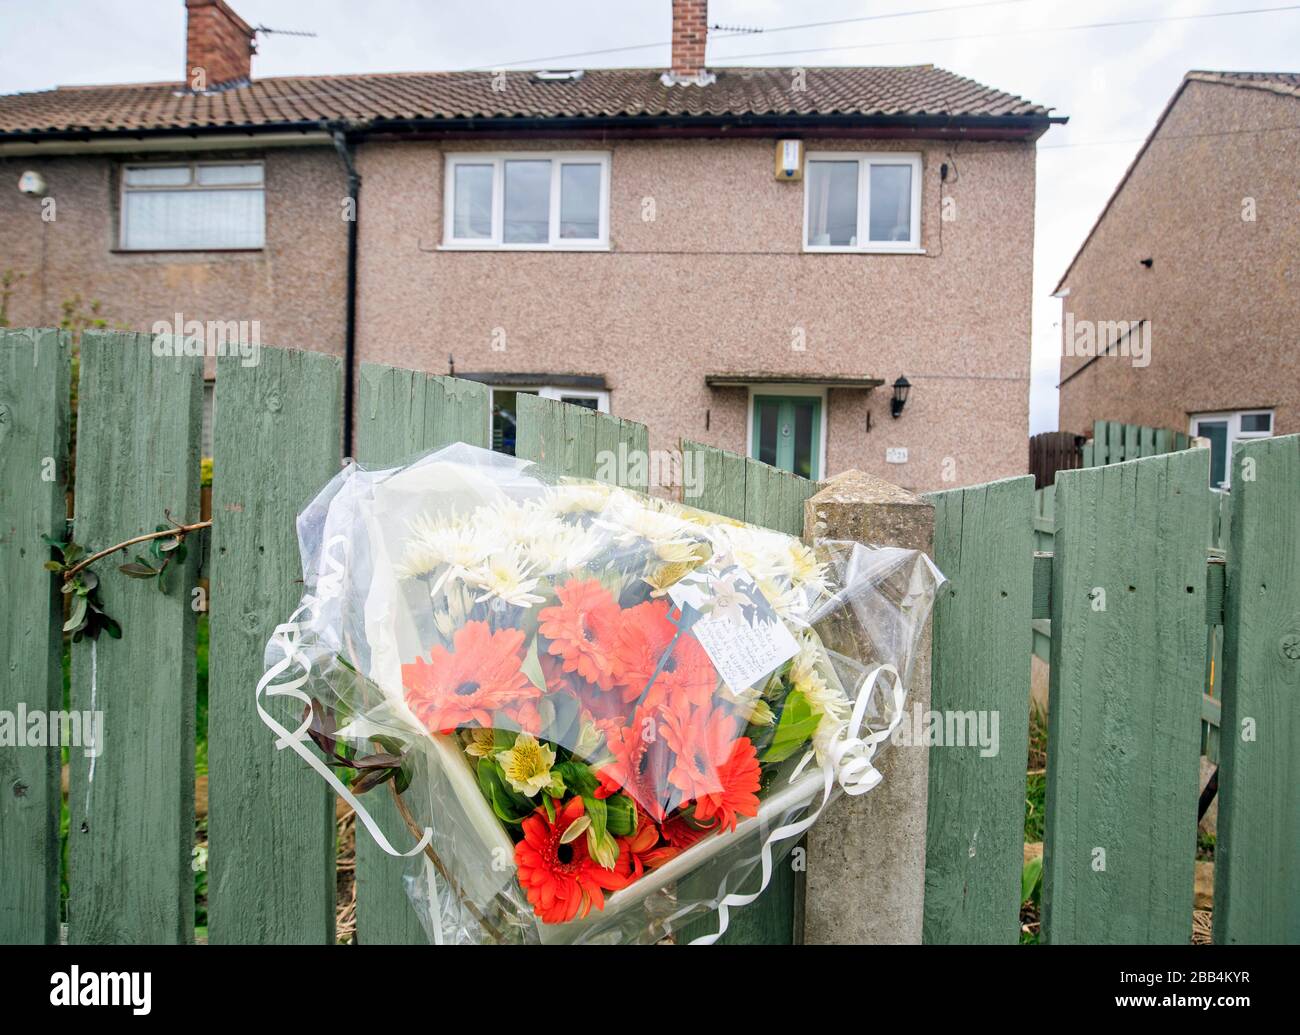 Eine Nachricht über eine Blumenzottung in Windsor Crescent, Middlecliffe, Barnsley, South Yorkshire, wo ein 40-jähriger Mann wegen Mordverdachts verhaftet wurde, nachdem eine Frau am Sonntag erstochen wurde. Stockfoto